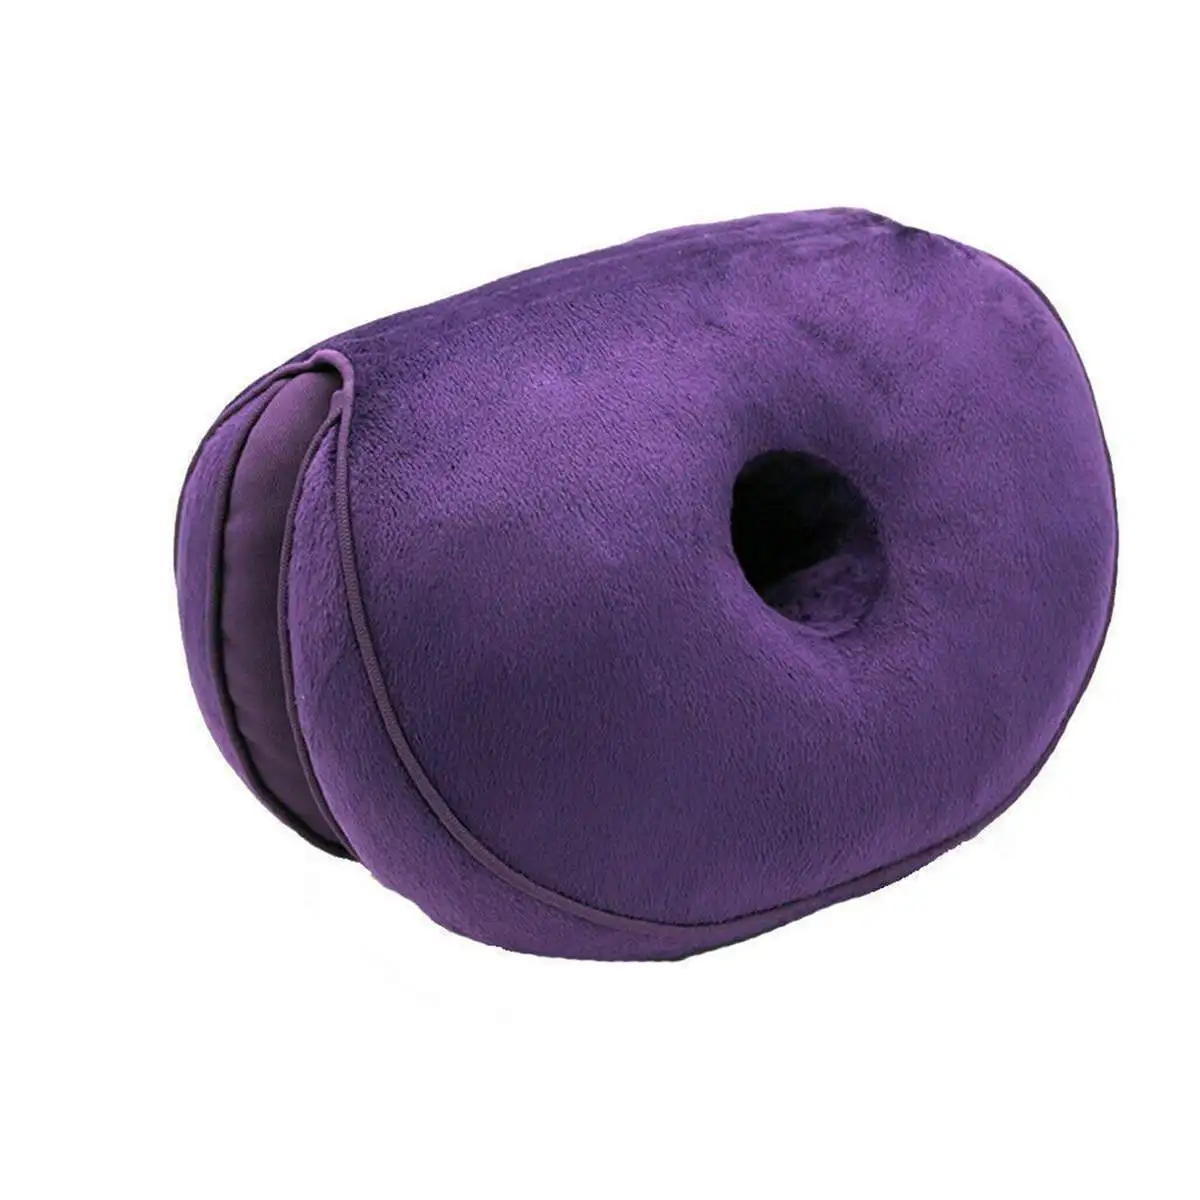 Двойной Комфорт Подушка сиденья пены памяти массажные на сиденья для формирования Сексуальная подтяжка ягодиц бедра вверх Подушка Pad поясничная Coccyx защита - Цвет: Purple